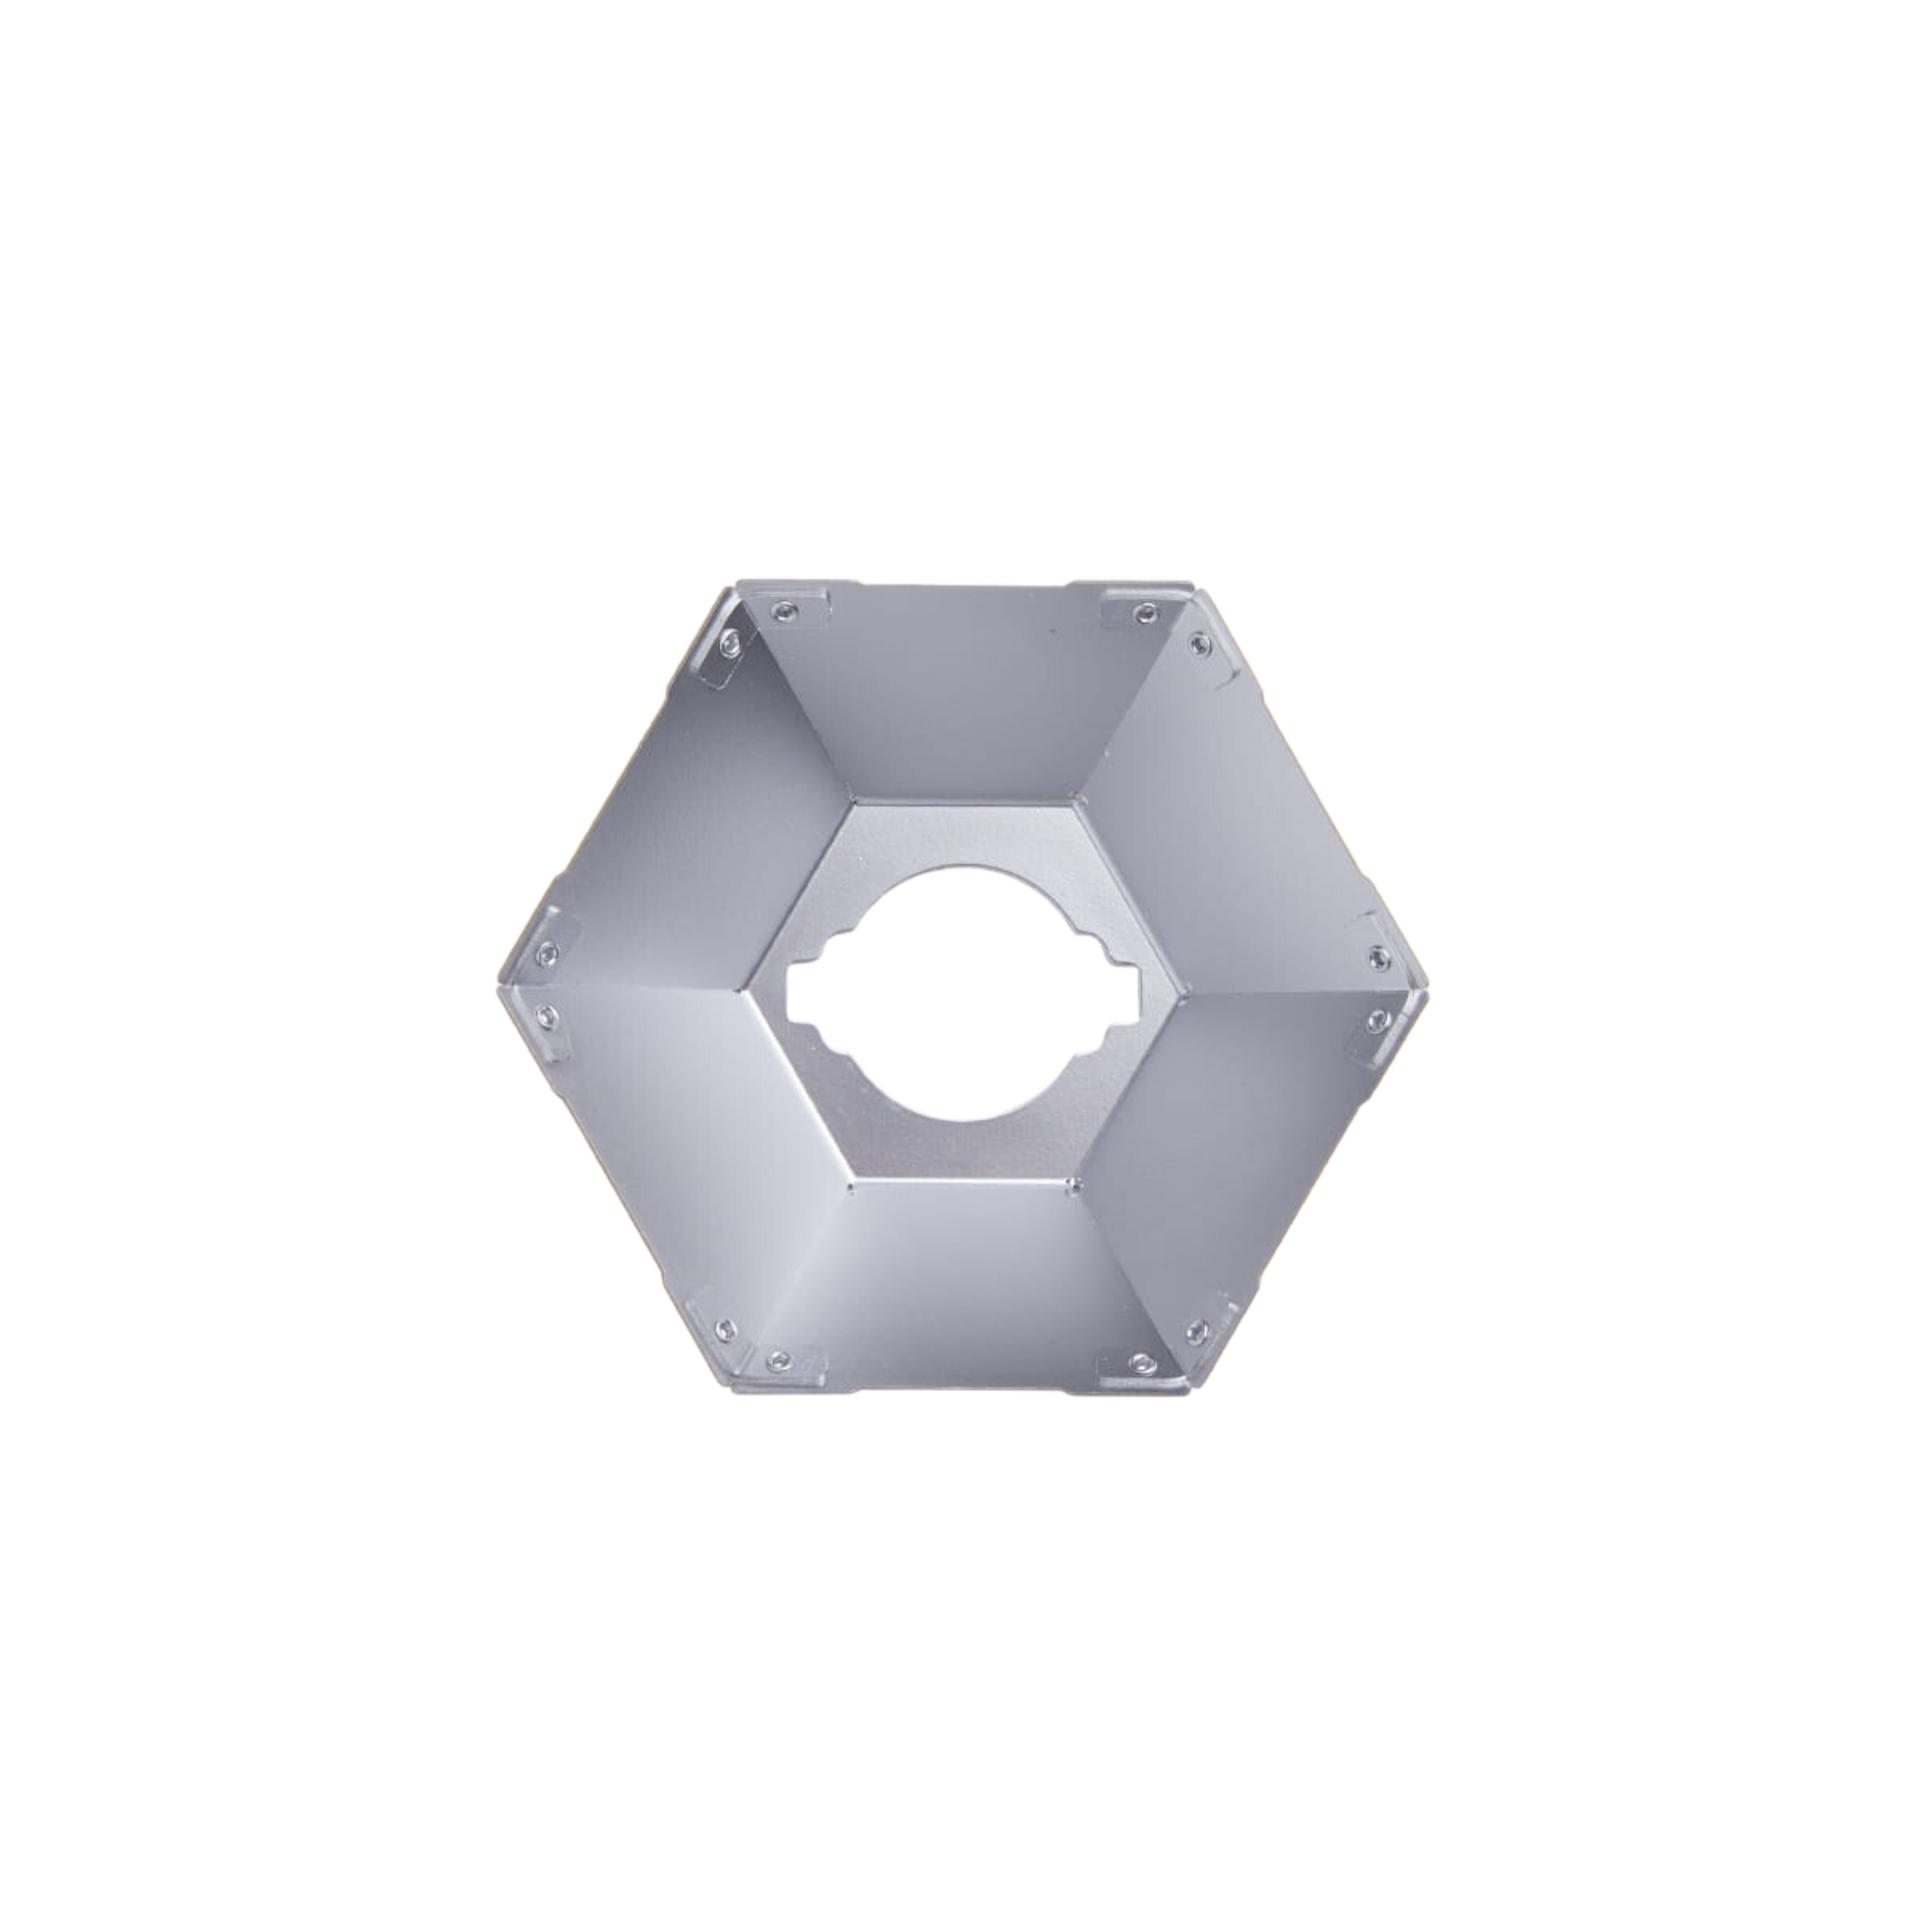 CARGO Container Hexagon Shade